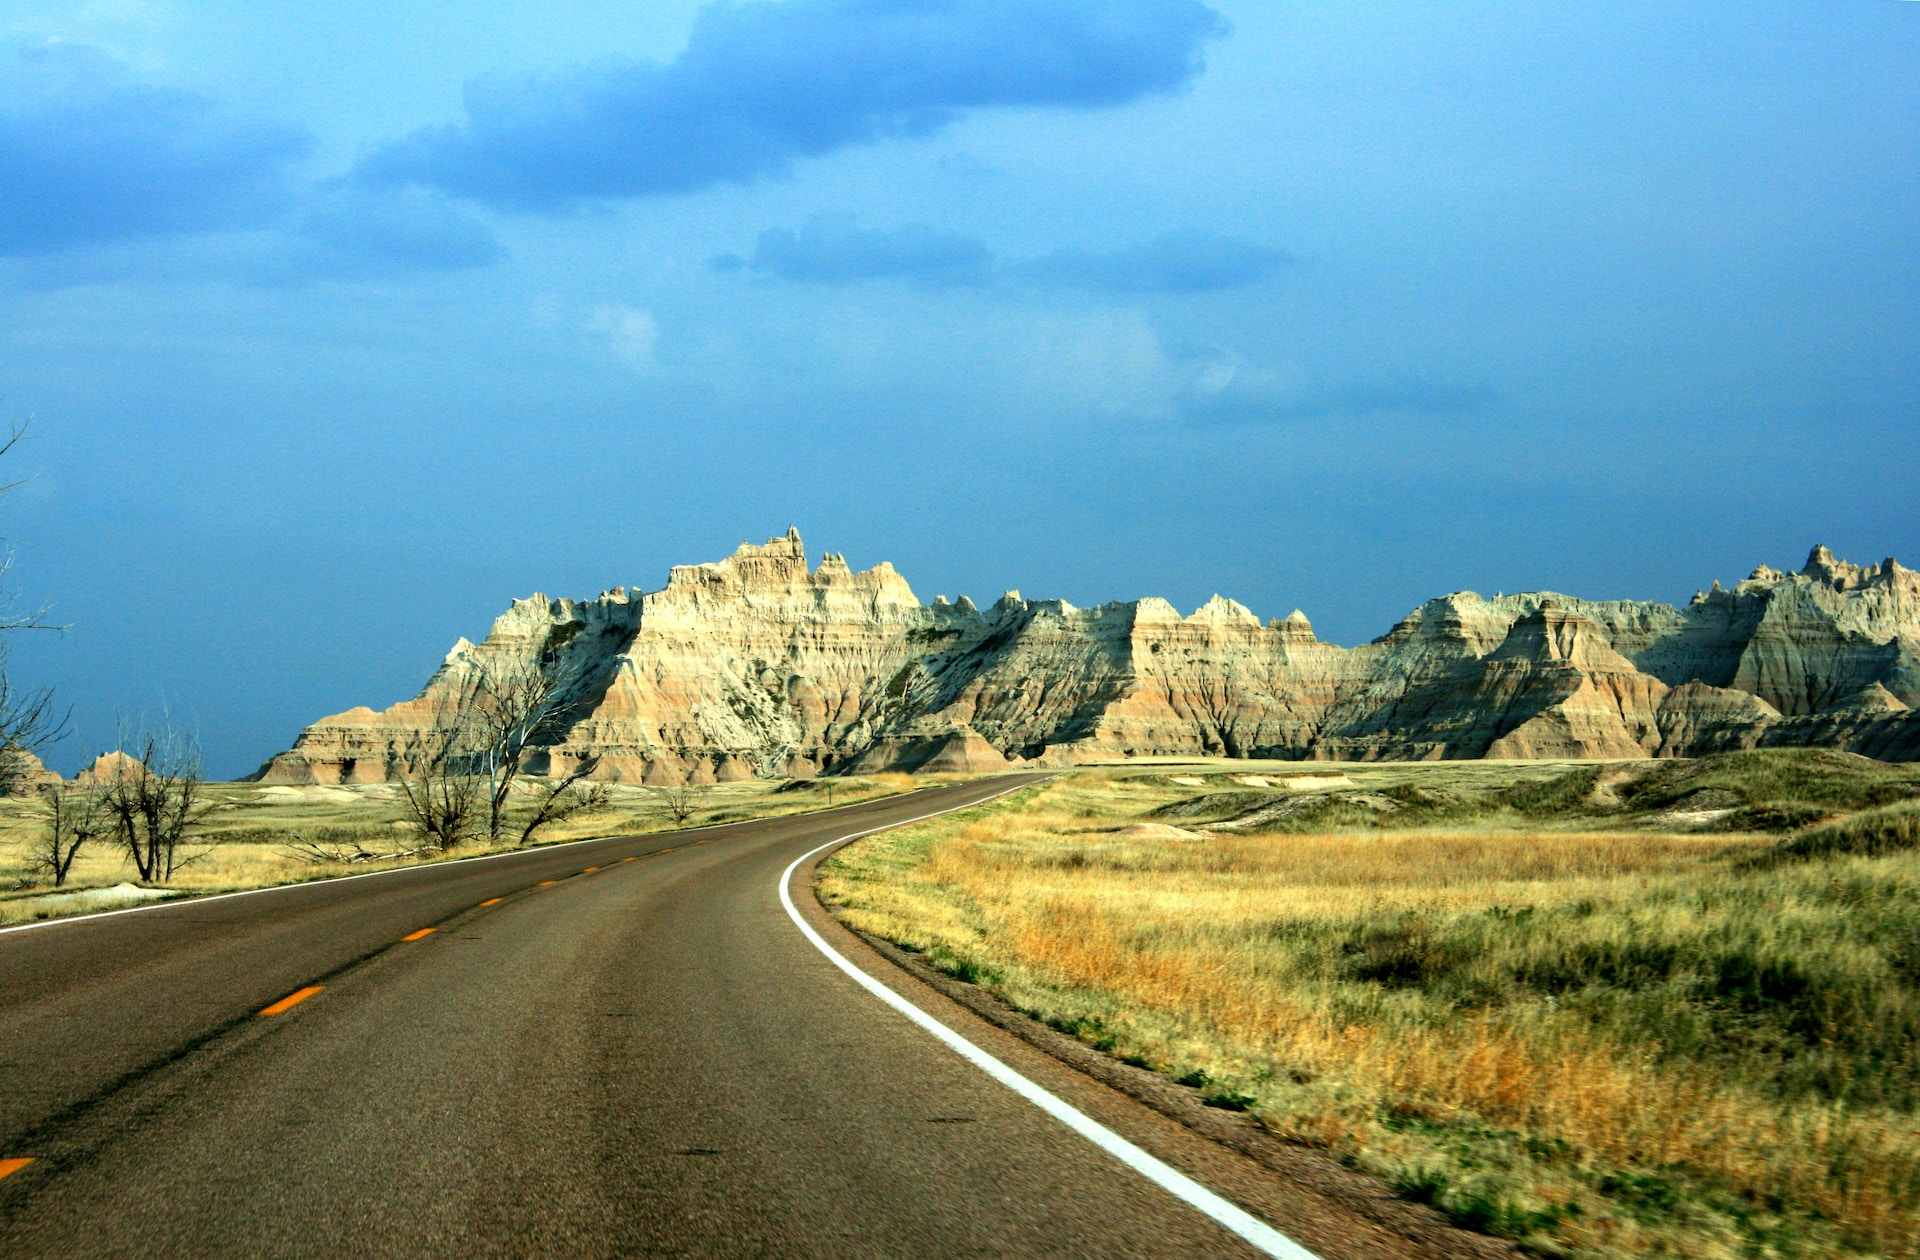 Visite Dakota del Sur: ¡recorra grandes paisajes!